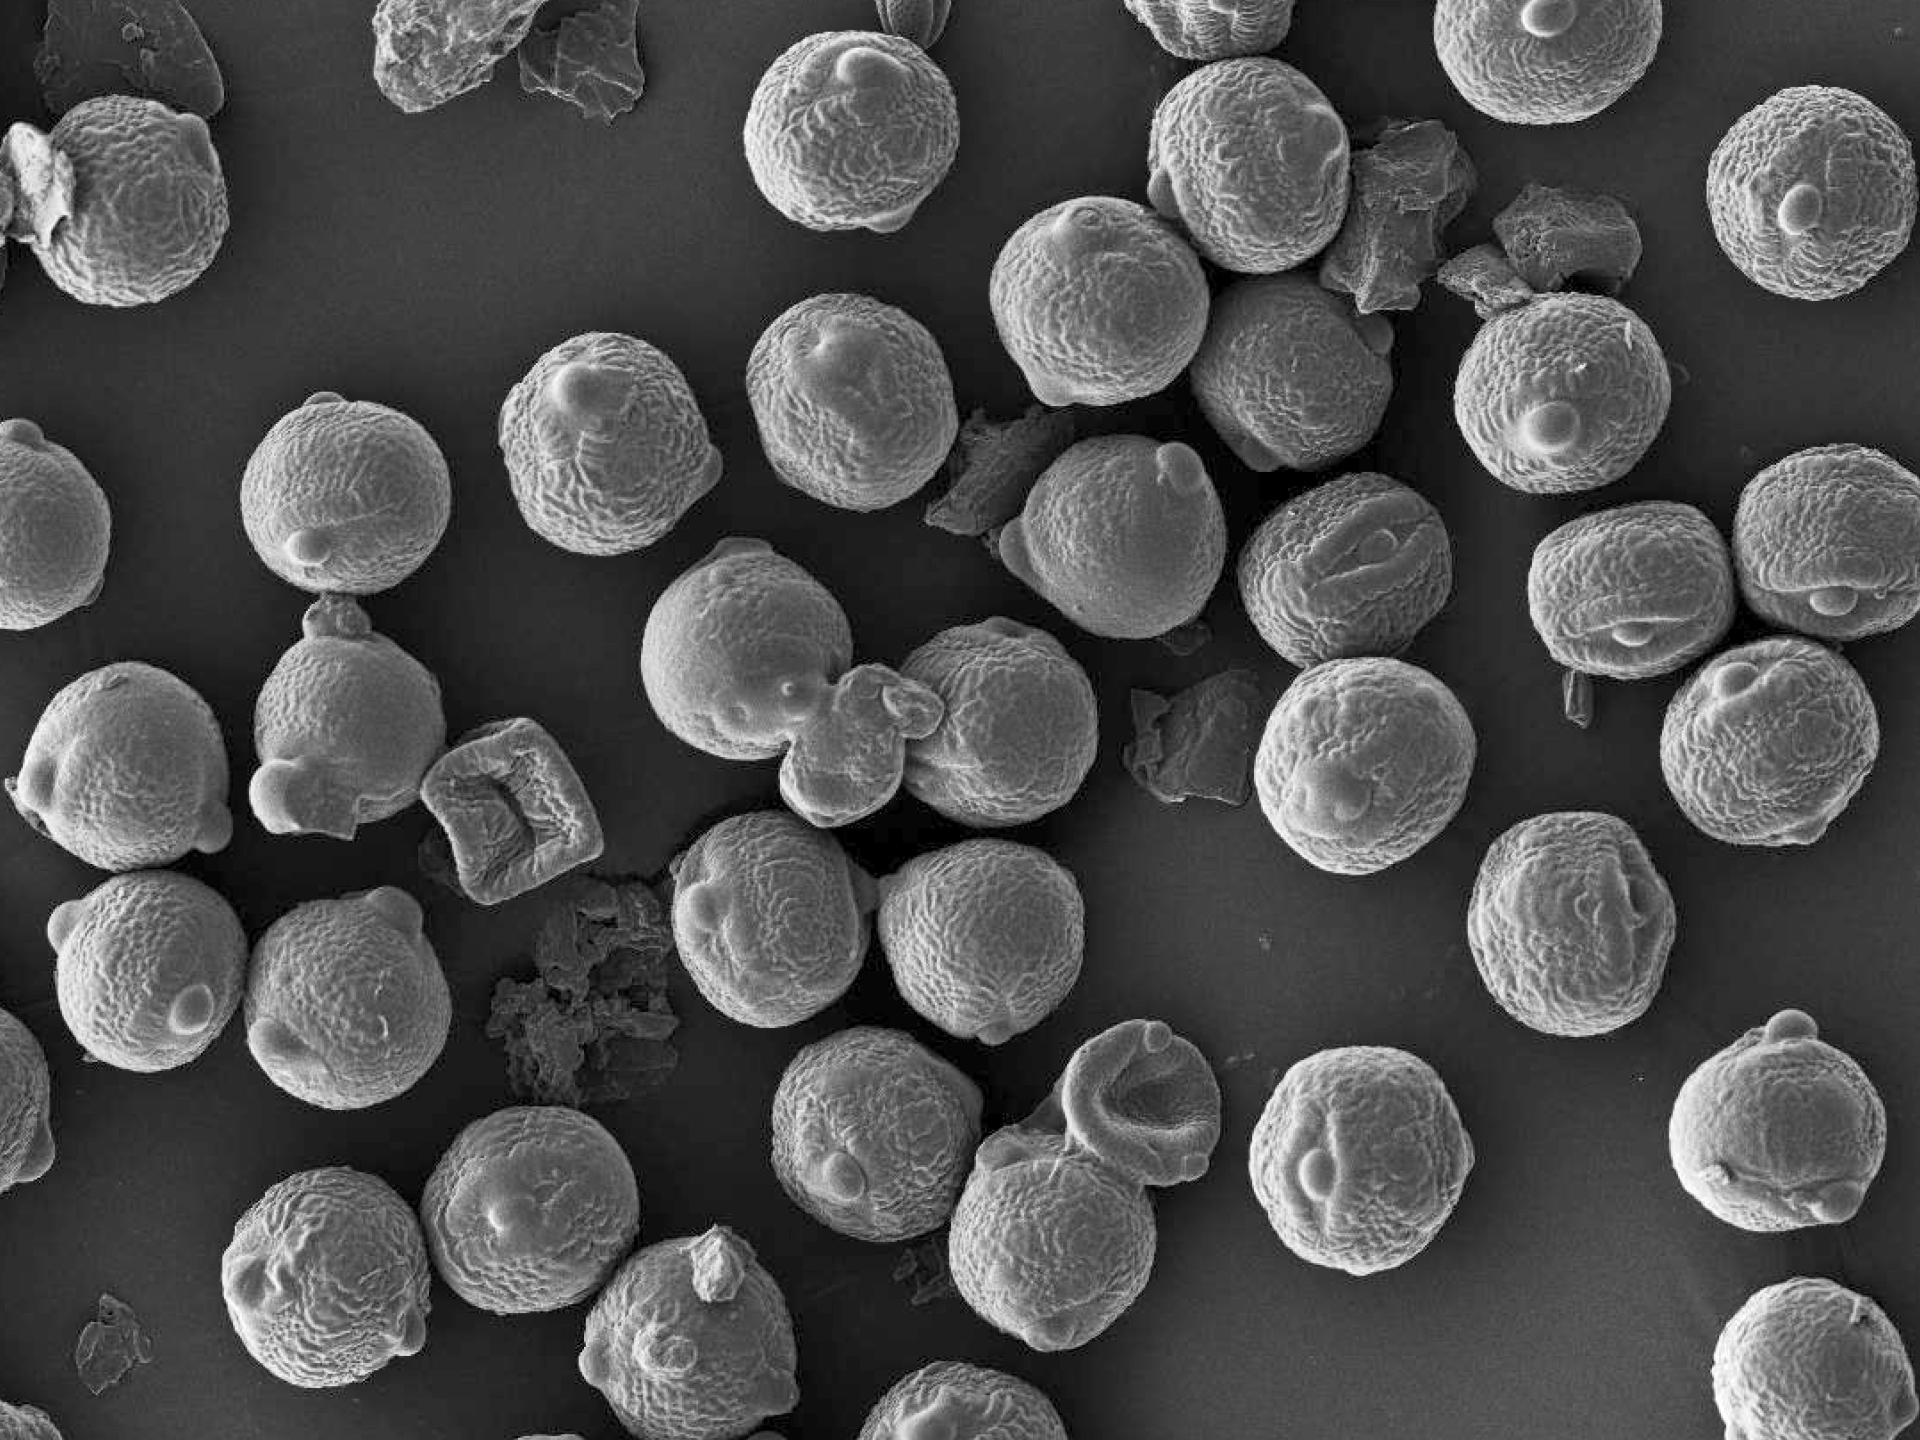 Fotografía microscópica de la composición y rol del polvo en ecosistemas de la Tierra